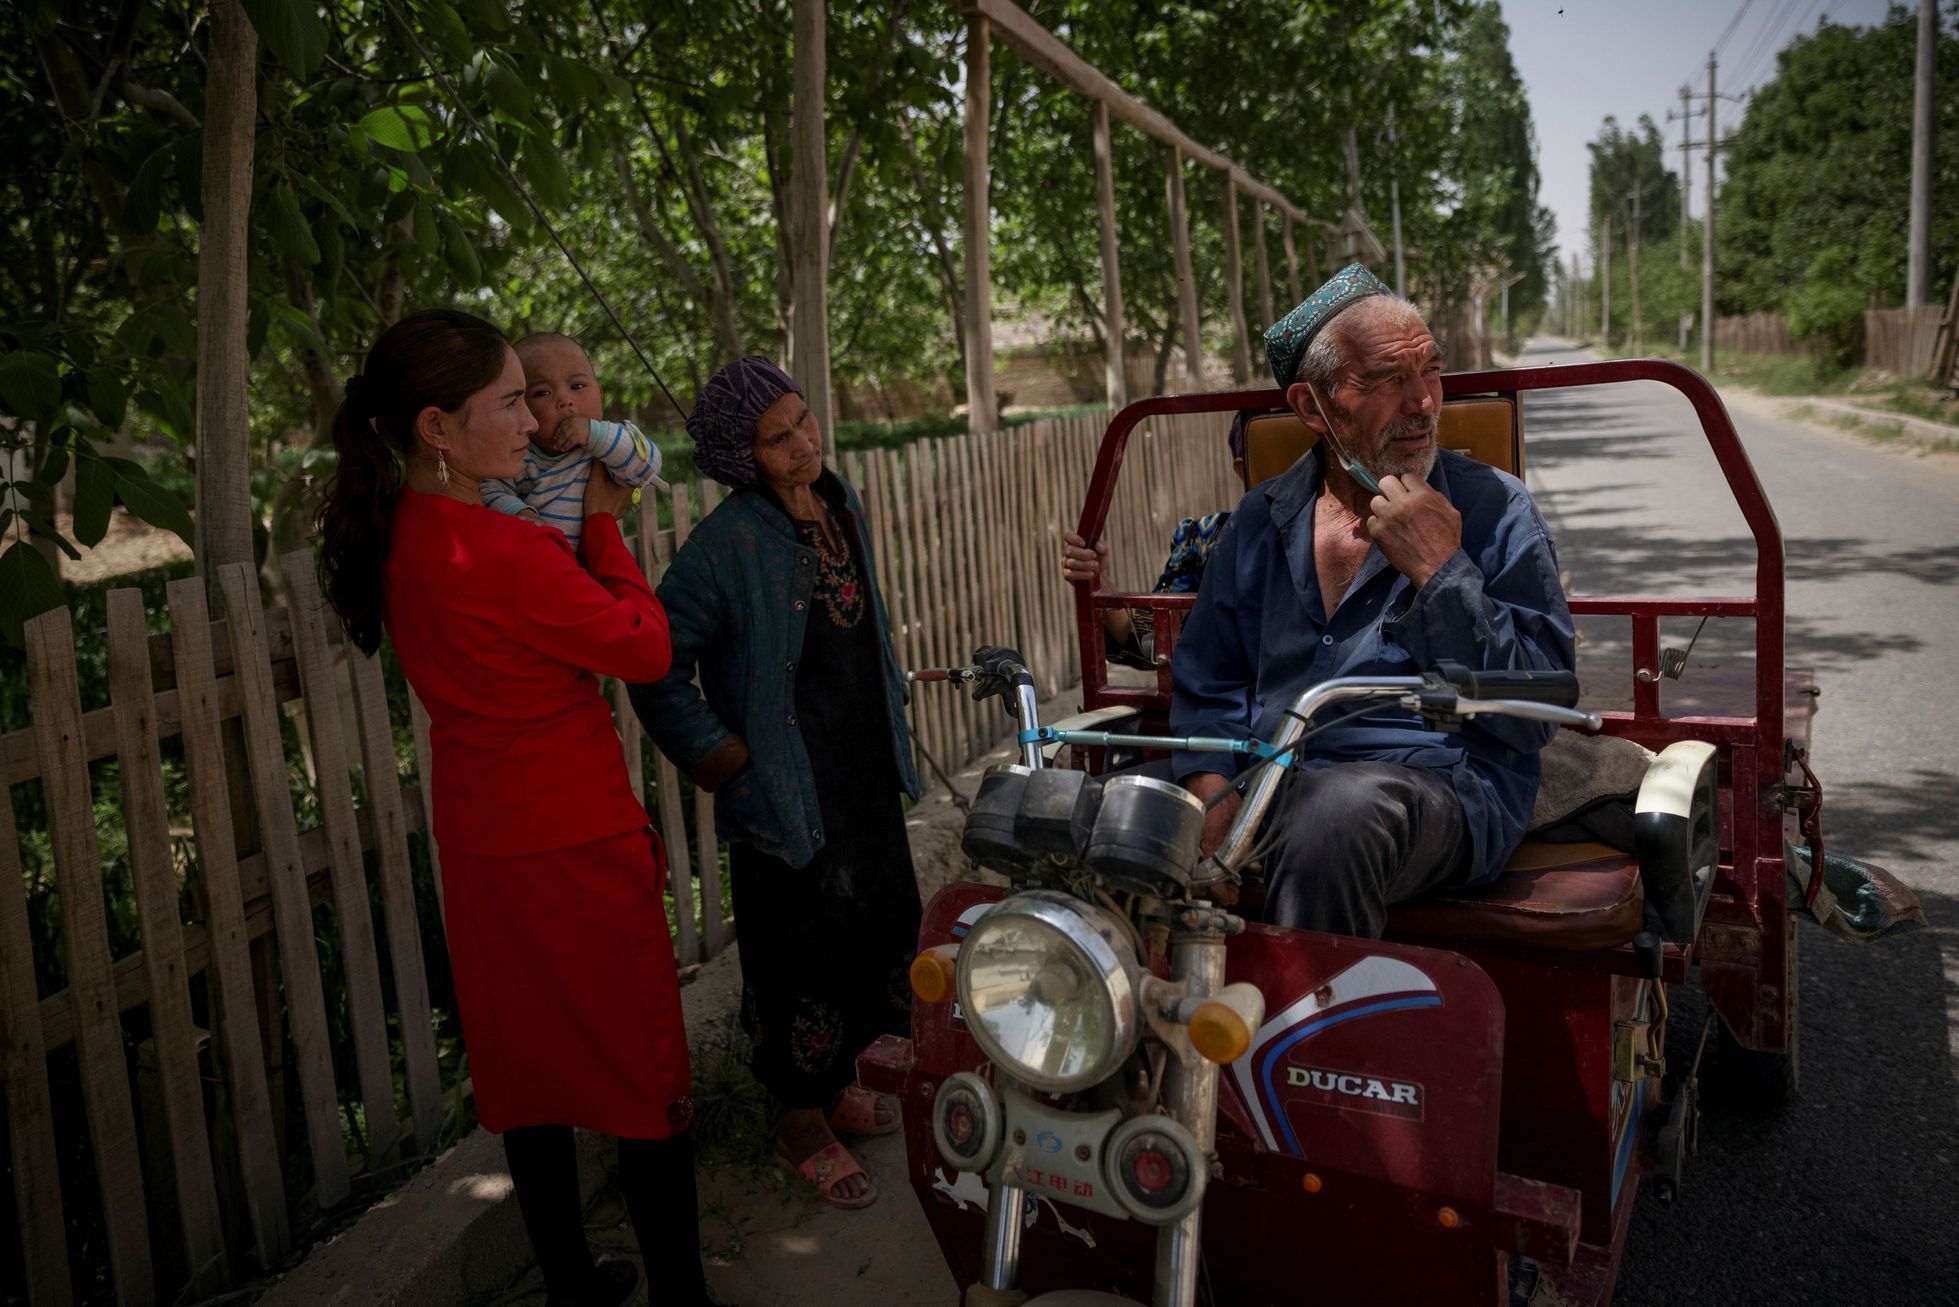 sin-ťiang ujgurové čína turisté převýchovné tábory